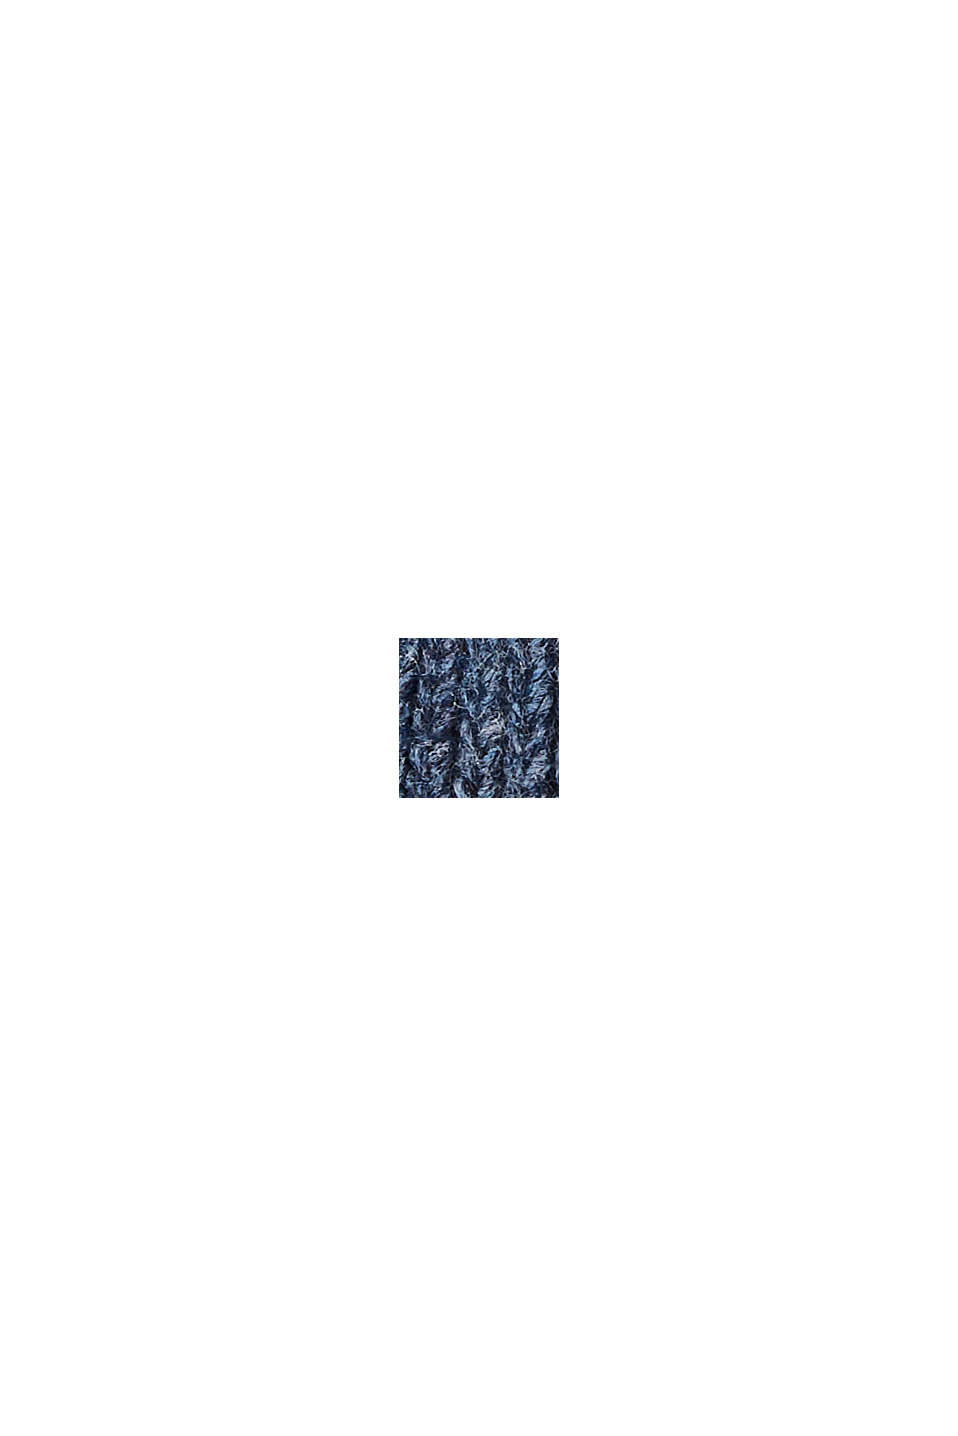 Z wełną/alpaką: Czapka beanie w bloki kolorów, DARK BLUE, swatch